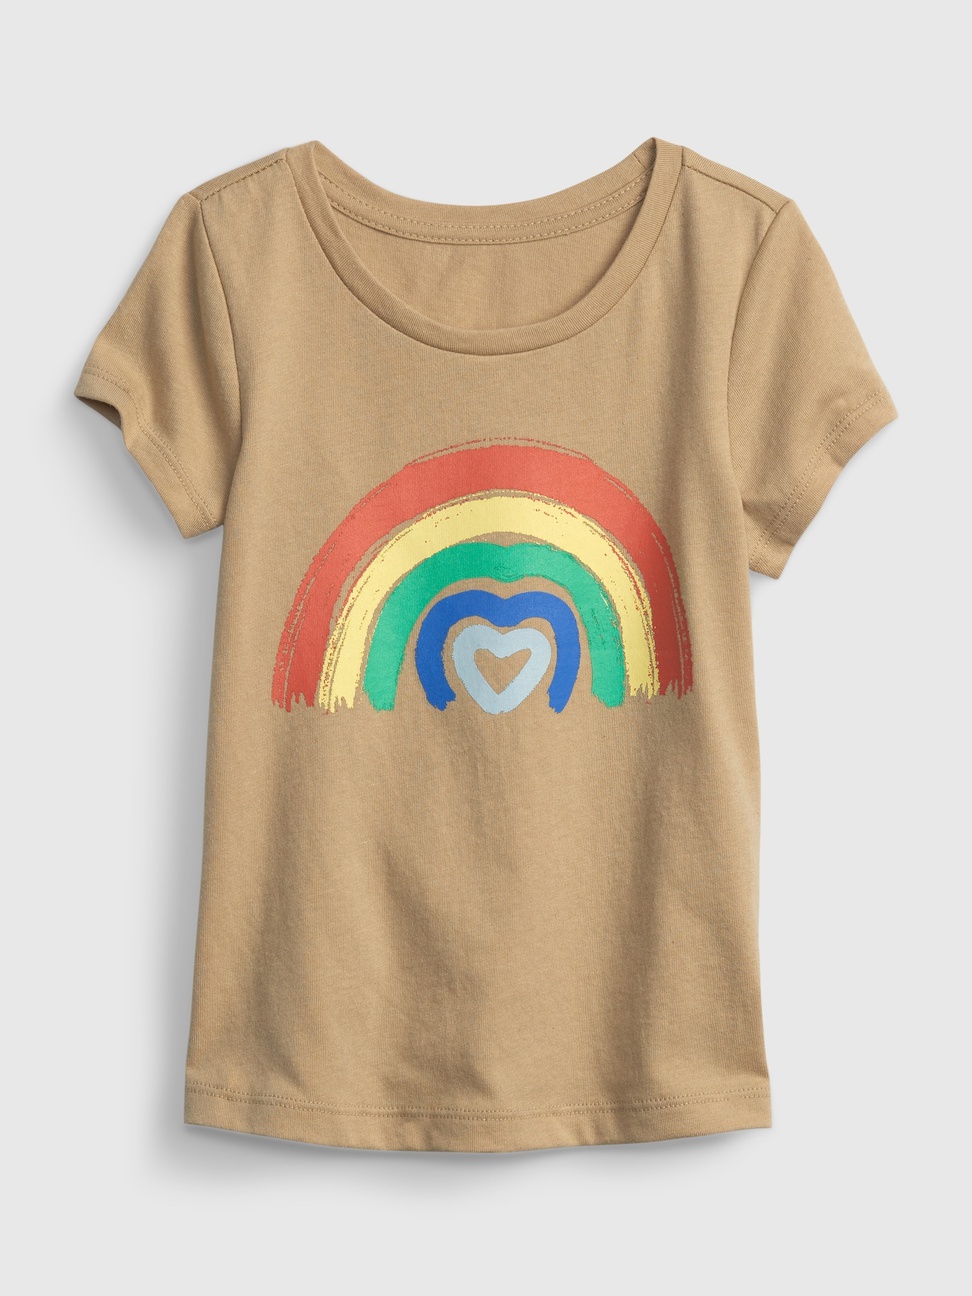 女幼童|純棉印花短袖T恤 布萊納系列-彩虹圖案